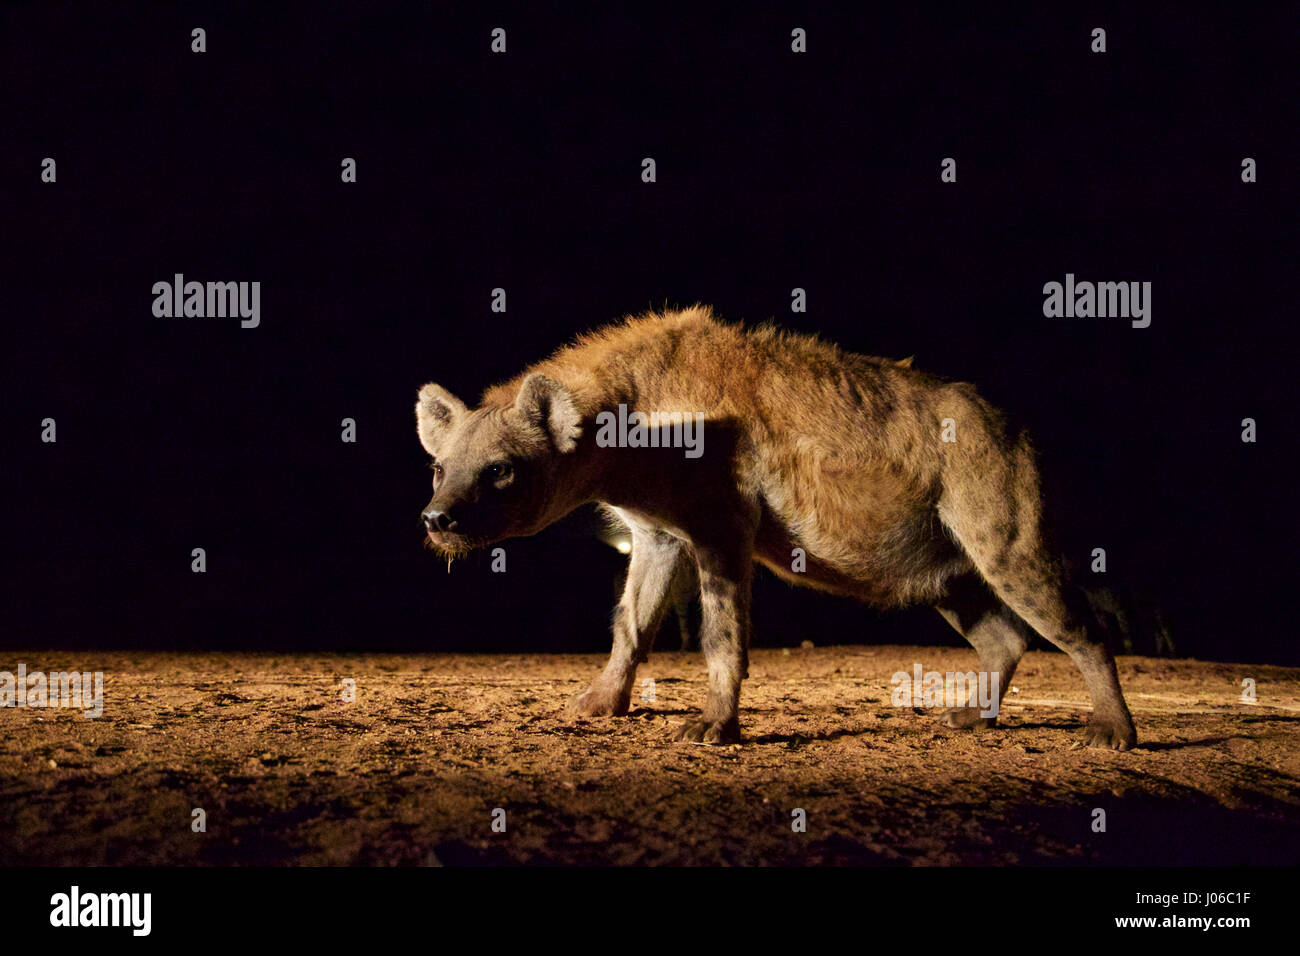 HARAR, Äthiopien: Eine einzelne Hyäne in der Nacht. Treffen Sie die unglaubliche Hyäne Mann von Harar, die nun seinen Titel auf seinen Sohn nach dreißig Jahren, am besten mit Freunden einen Clan dieser fleischfressende Tiere vorbei ist. Bilder zeigen einen jungen Erben die Hyäne Mann Titel nach der jahrhundertealten Tradition seines Volkes vor möglichen Angriffen durch Hyänen ruhig füttern diese wilden Radikalfänger schützen. Er ist völlig frei von jeglicher Art von Angst Sie assoziieren würde, wobei dies in der Nähe Afrikas produktivsten Fleischfresser.  Hyänen sind dafür bekannt, angreifen und töten Menschen, sondern als diese bemerkenswerte Ima Stockfoto